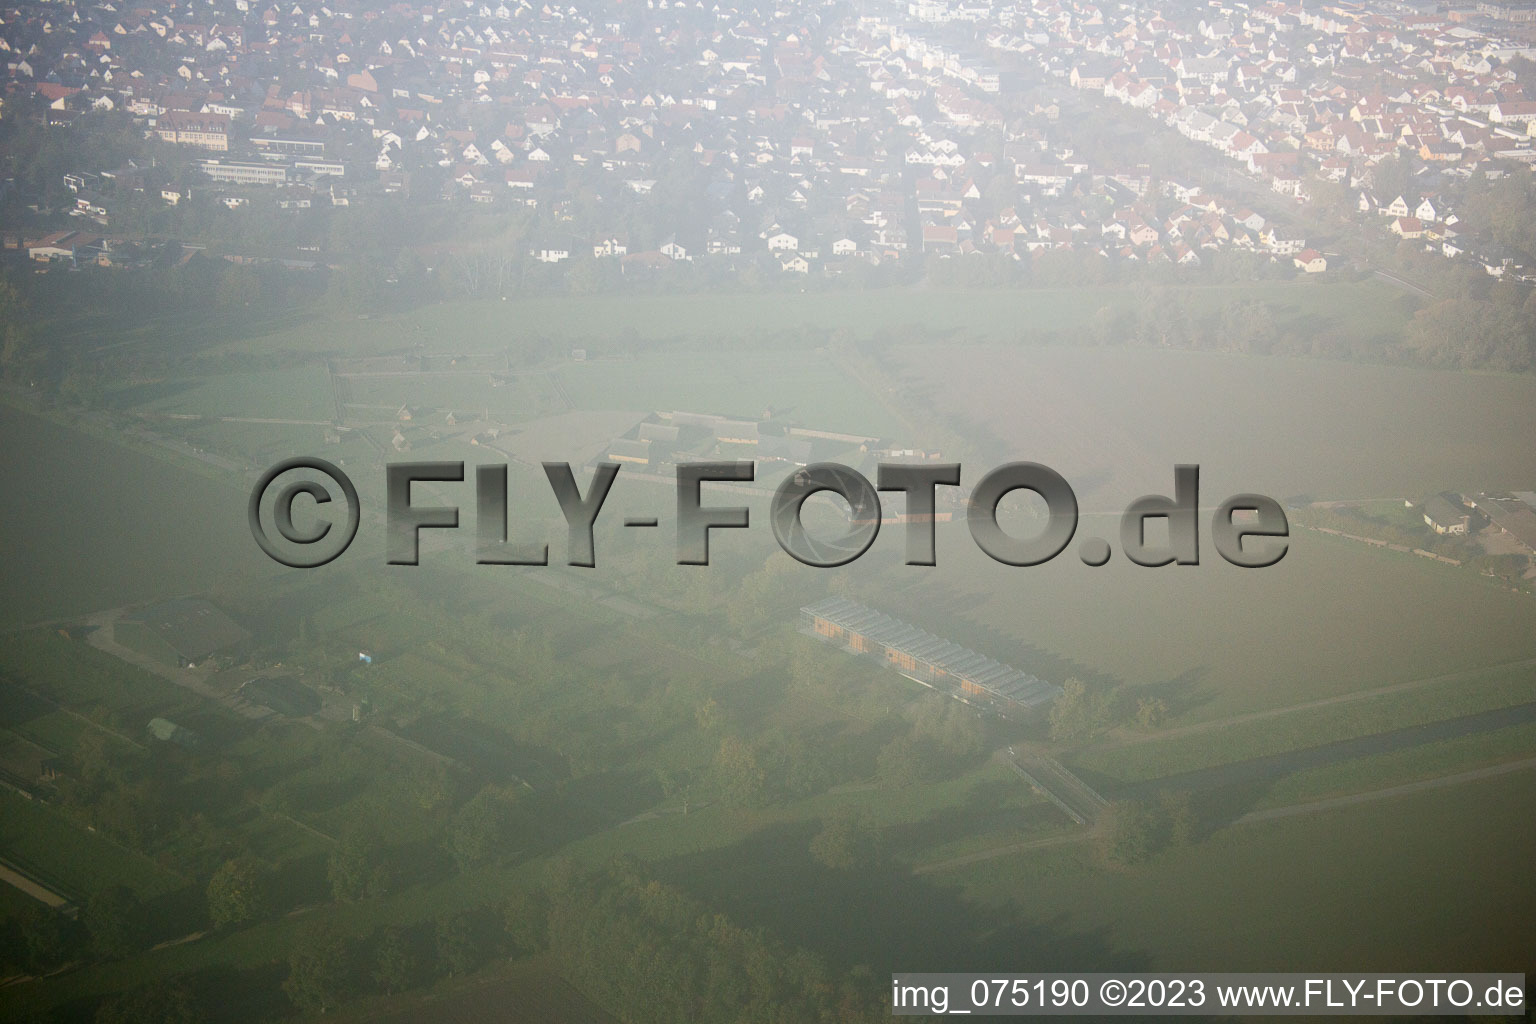 Lorsch im Bundesland Hessen, Deutschland von einer Drohne aus